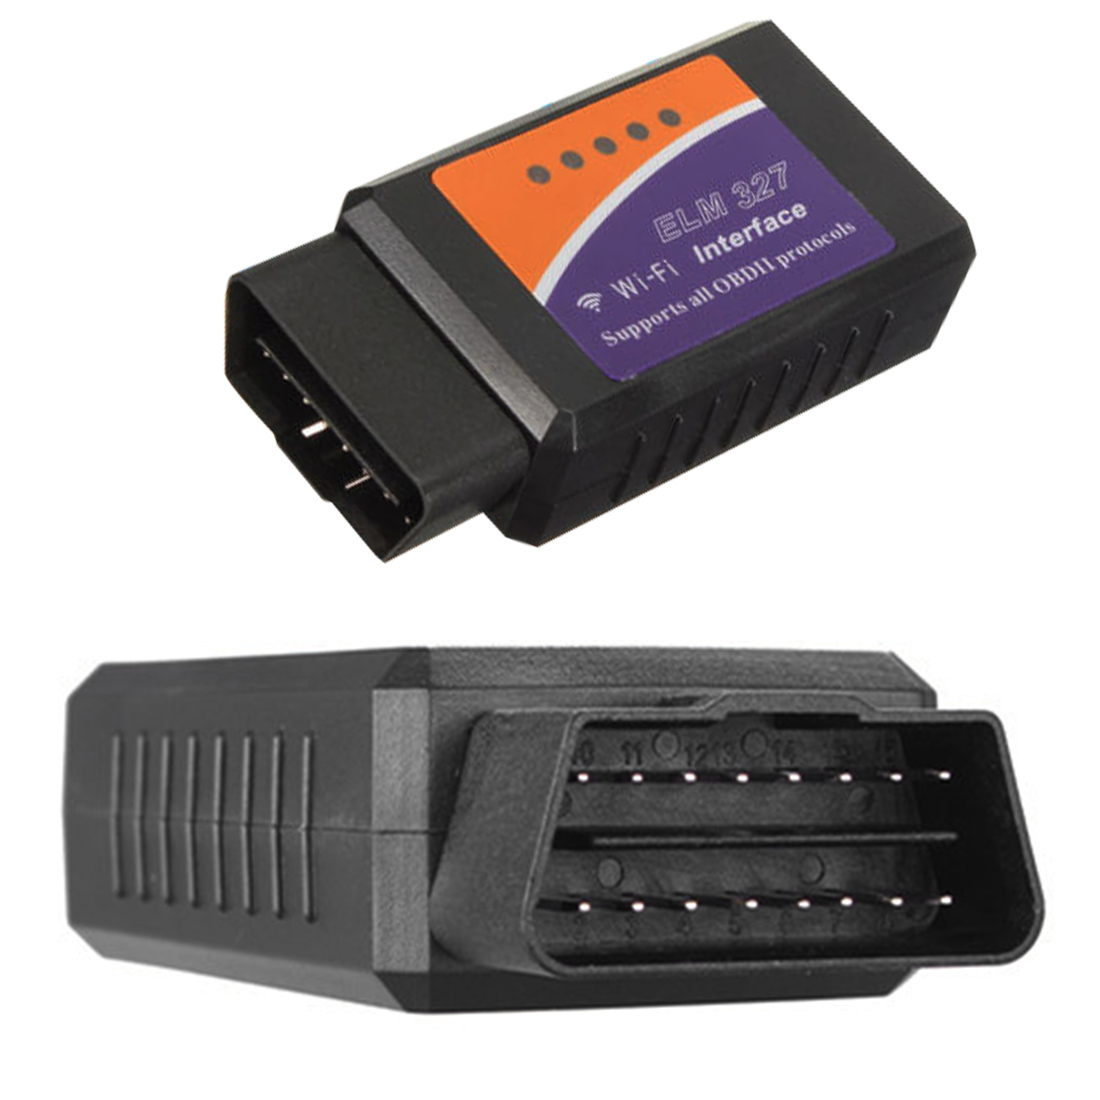 Автосканер elm327 1.5. Bluetooth автосканер elm327. OBD 2 адаптер elm327 WIFI. Elm327 v1.5 диагностический сканер. Сканер елм 327 обд2.